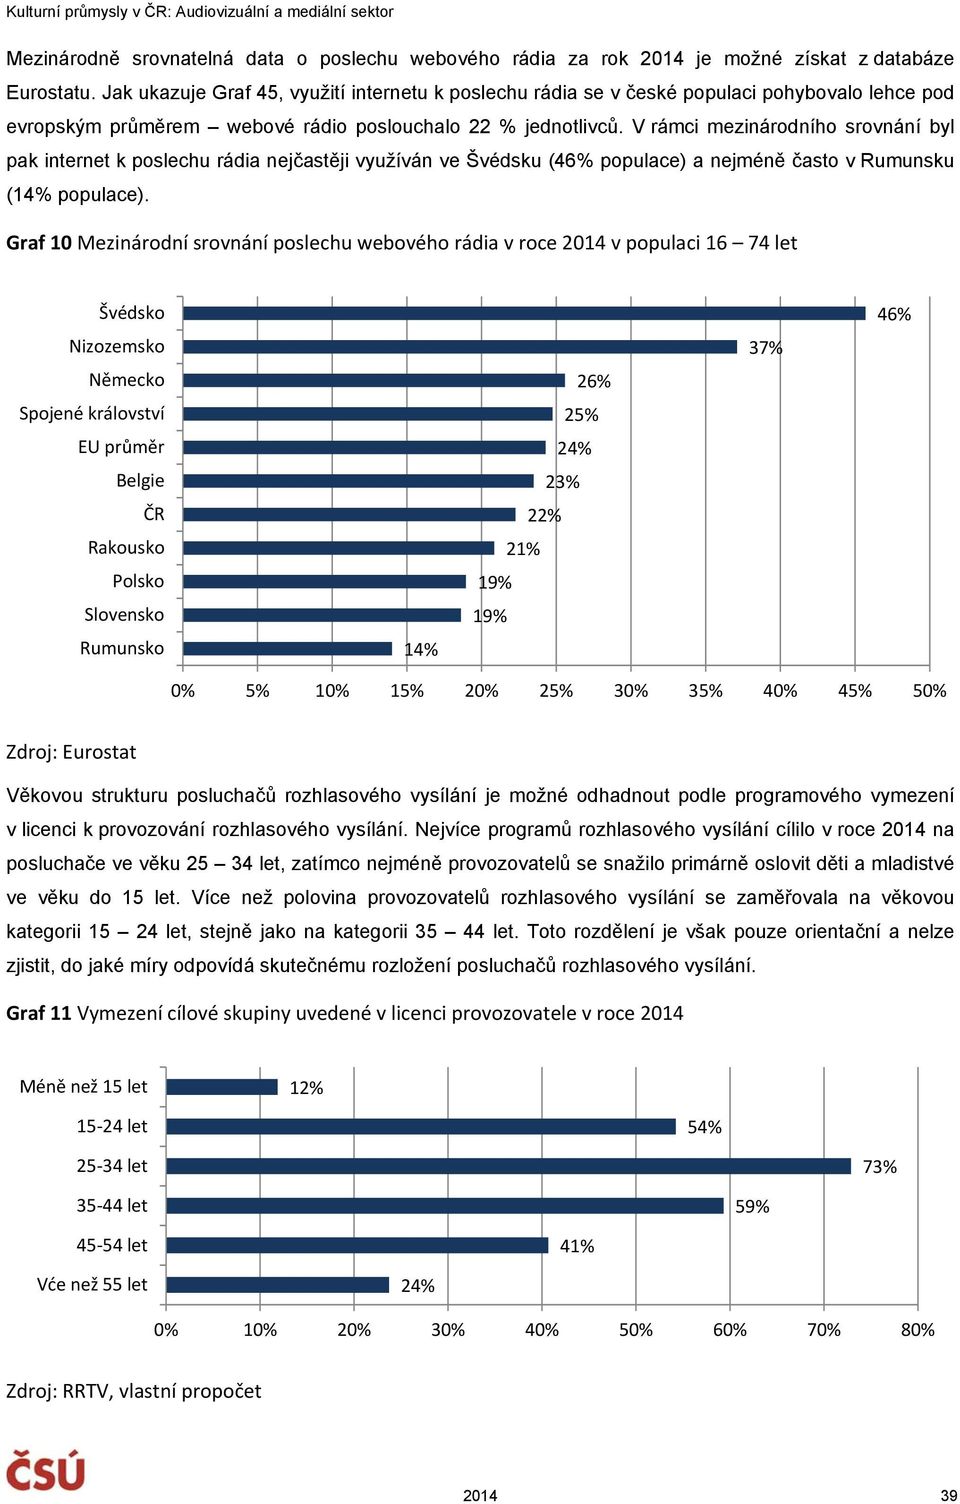 V rámci mezinárodního srovnání byl pak internet k poslechu rádia nejčastěji využíván ve Švédsku (46% populace) a nejméně často v Rumunsku (14% populace).